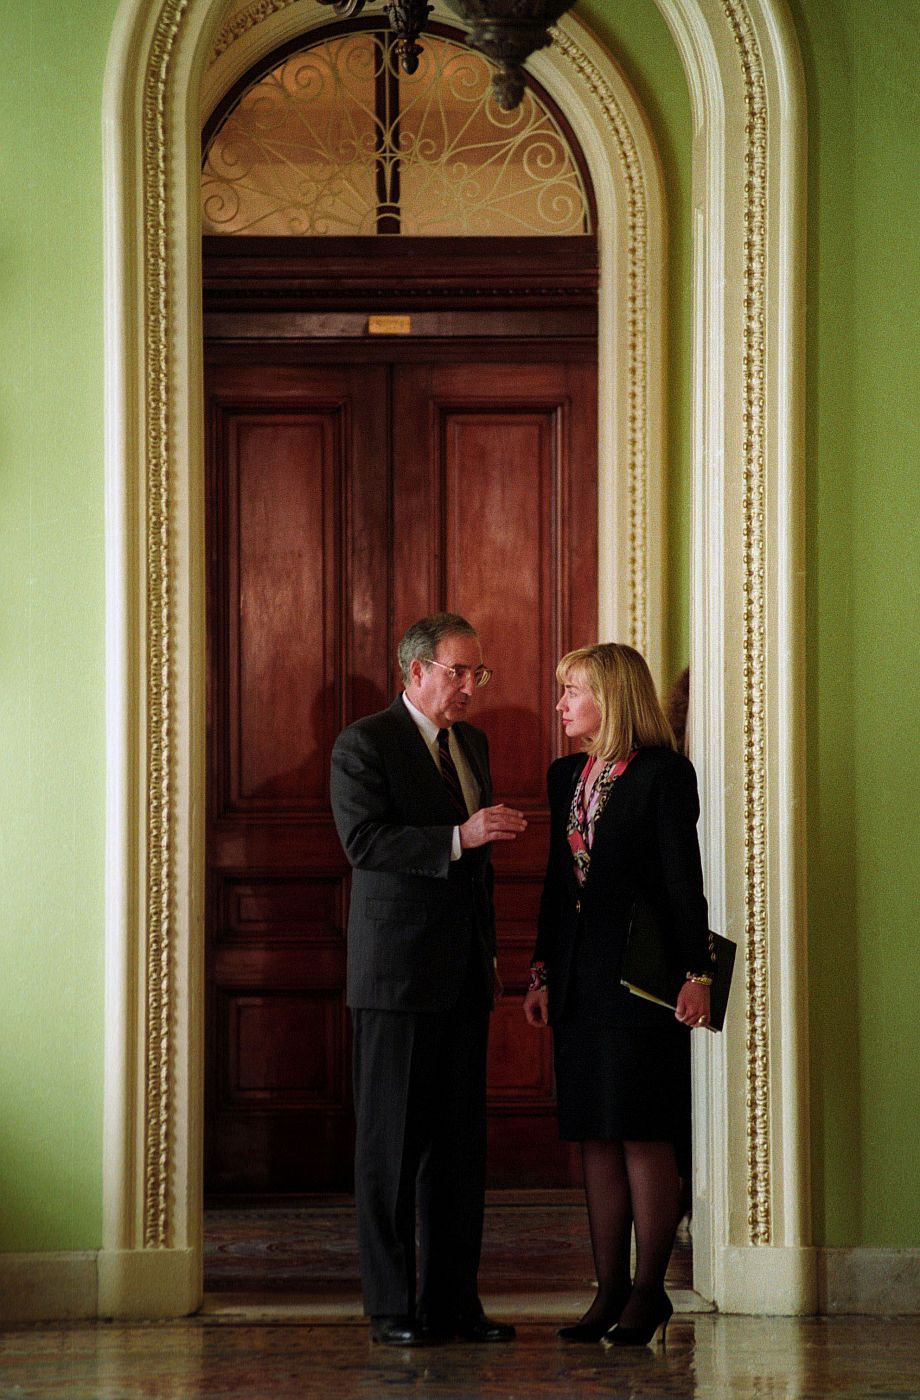 El senador Goerge Mitchell en 1993, cuando ejercí como líder de la mayoría demócrata en el Senado, charlando con la entonces primera dama, Hillary Clinton, que ocupará la Secretaria de Estado con Barack Obama.